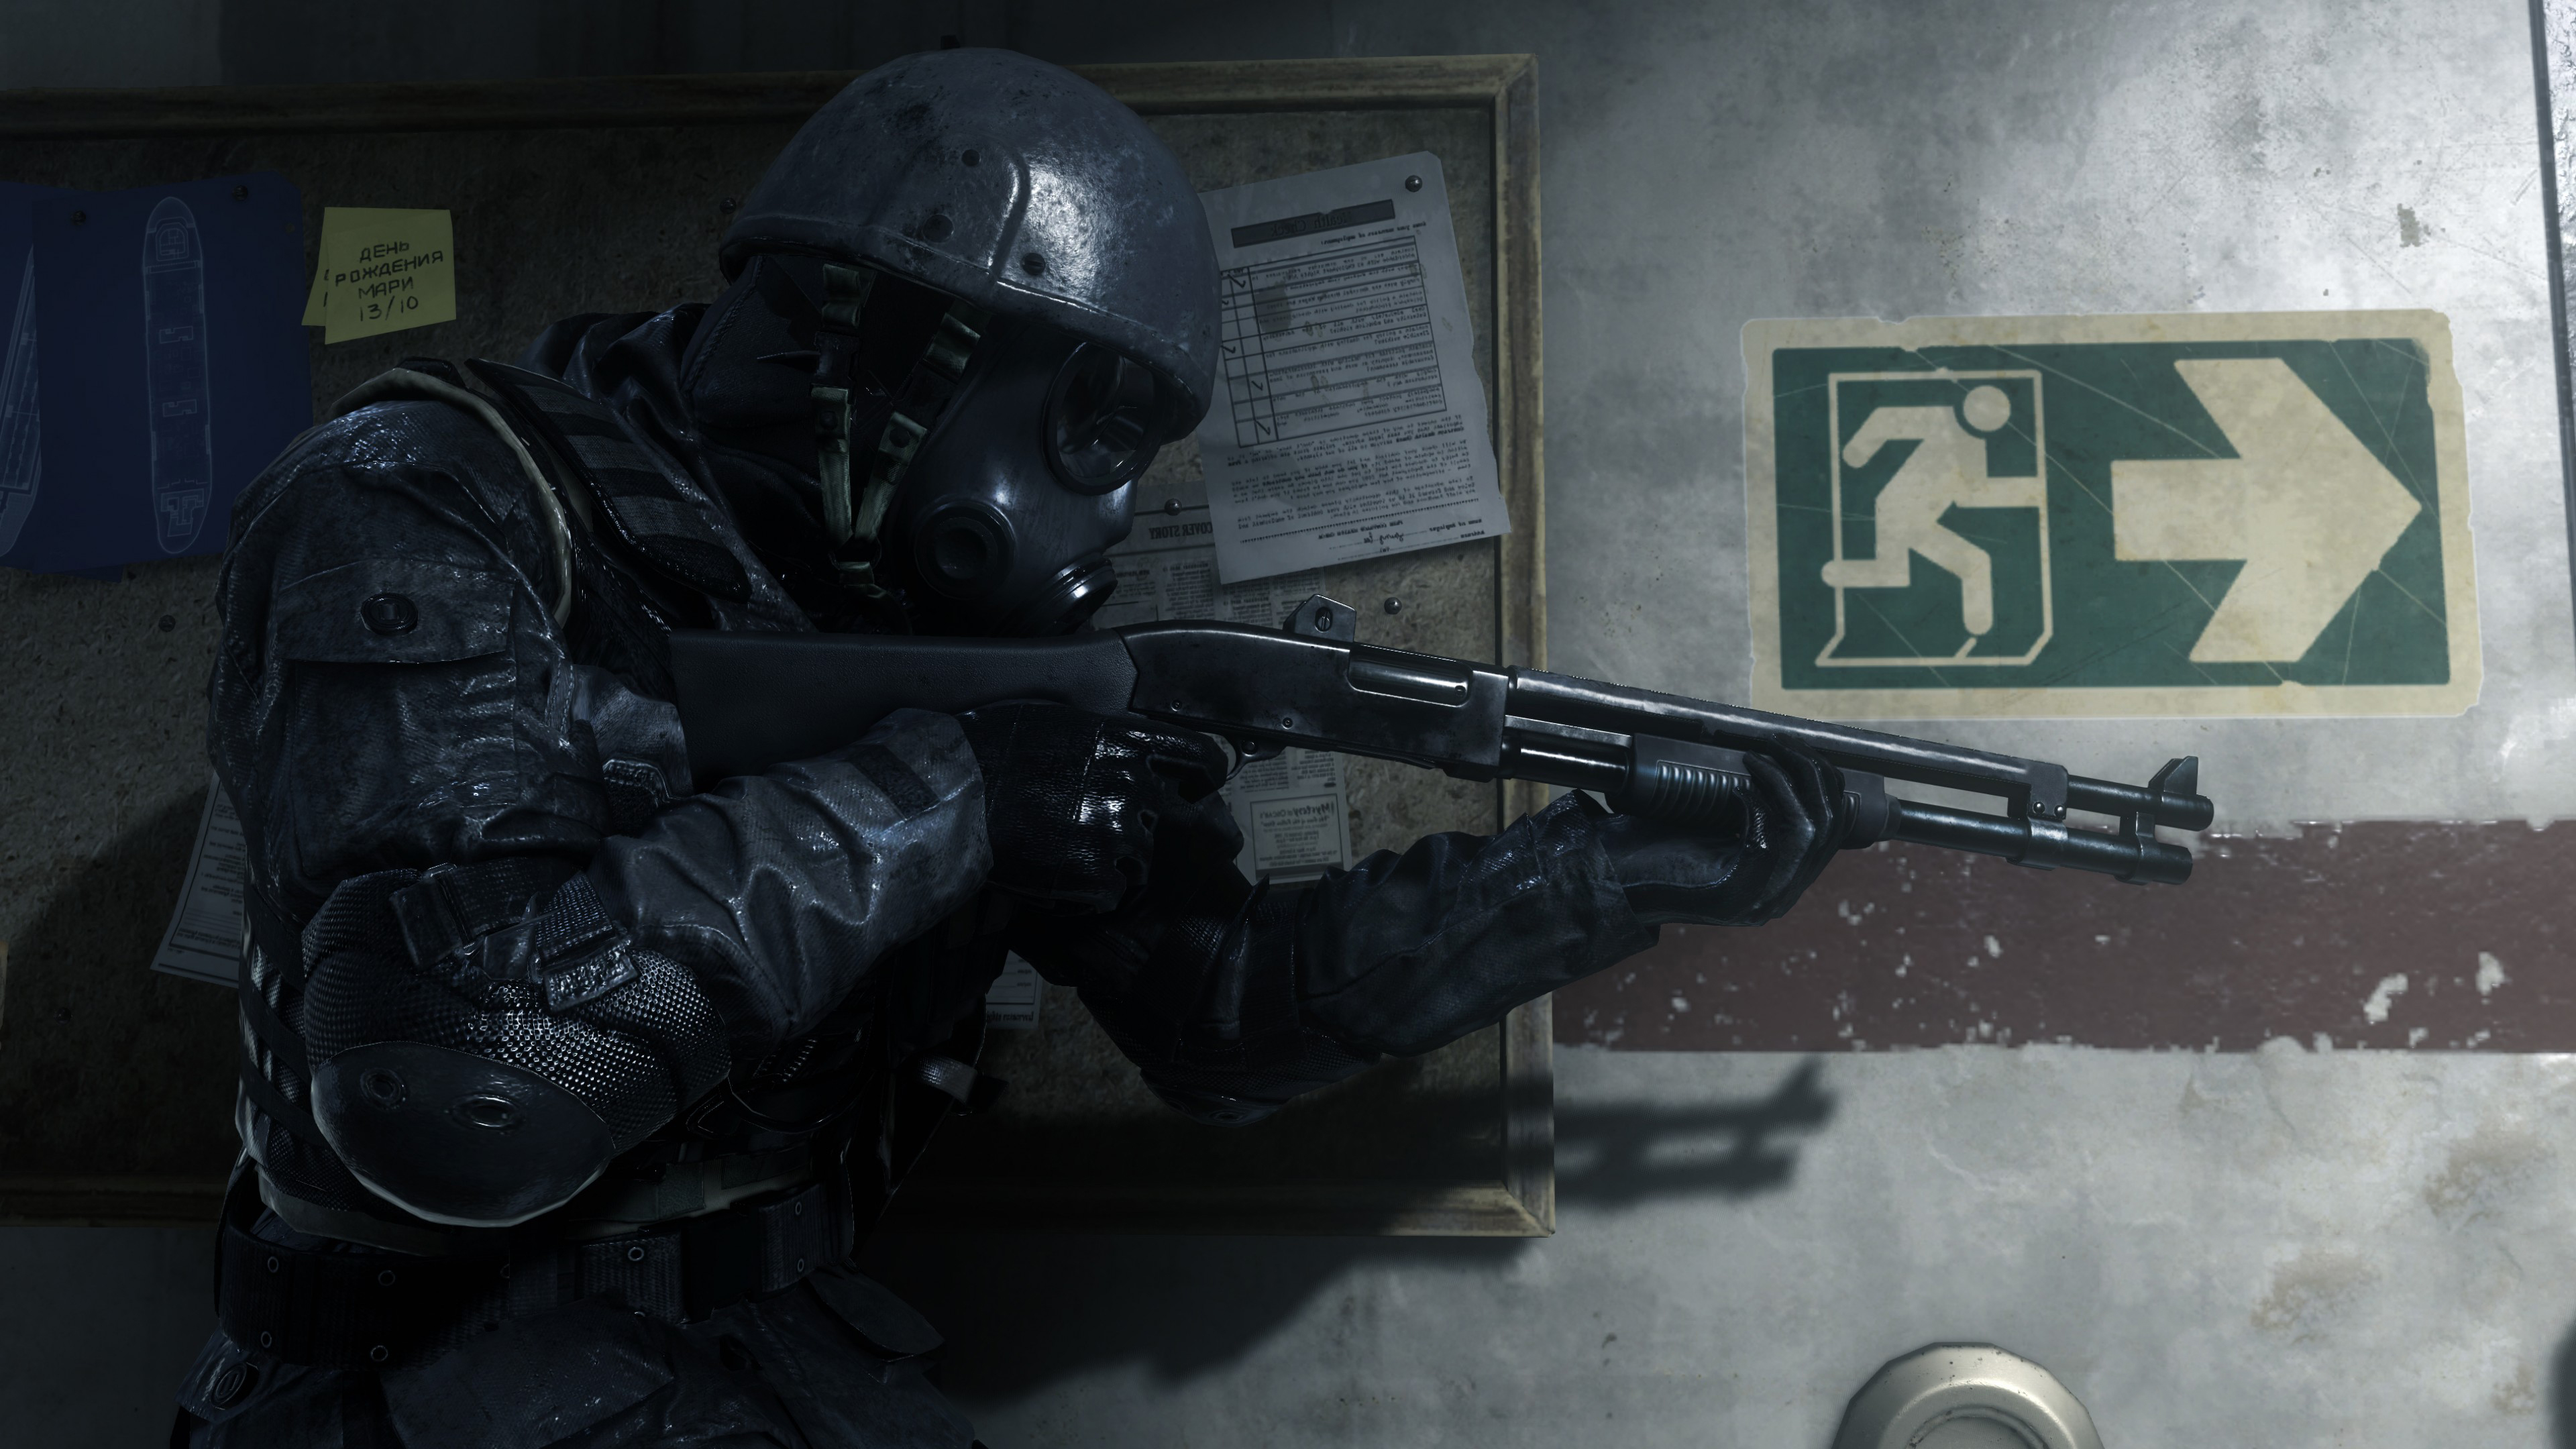 Call of Duty: Modern Warfare Wallpaper in Ultra HDK